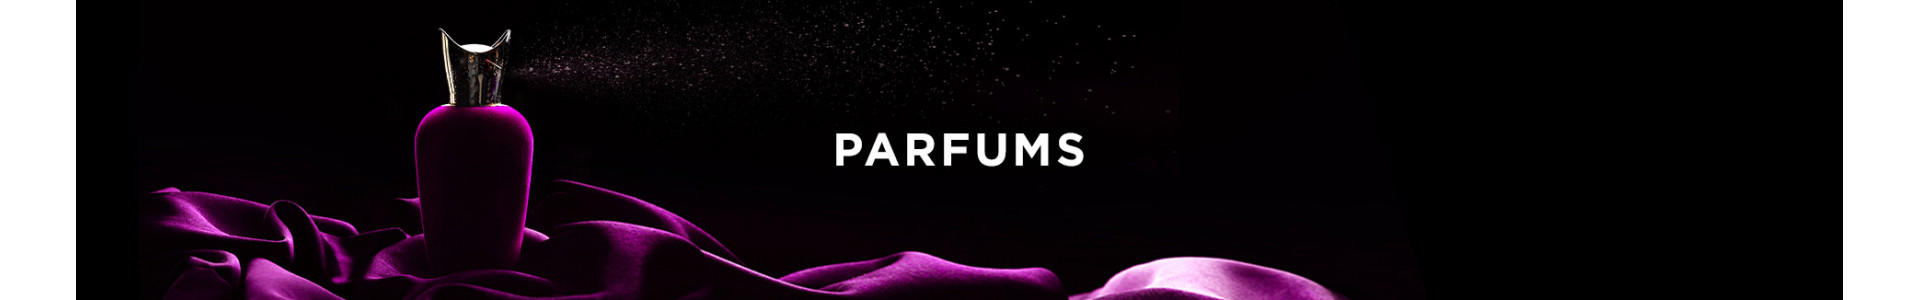 Parfums - Madora